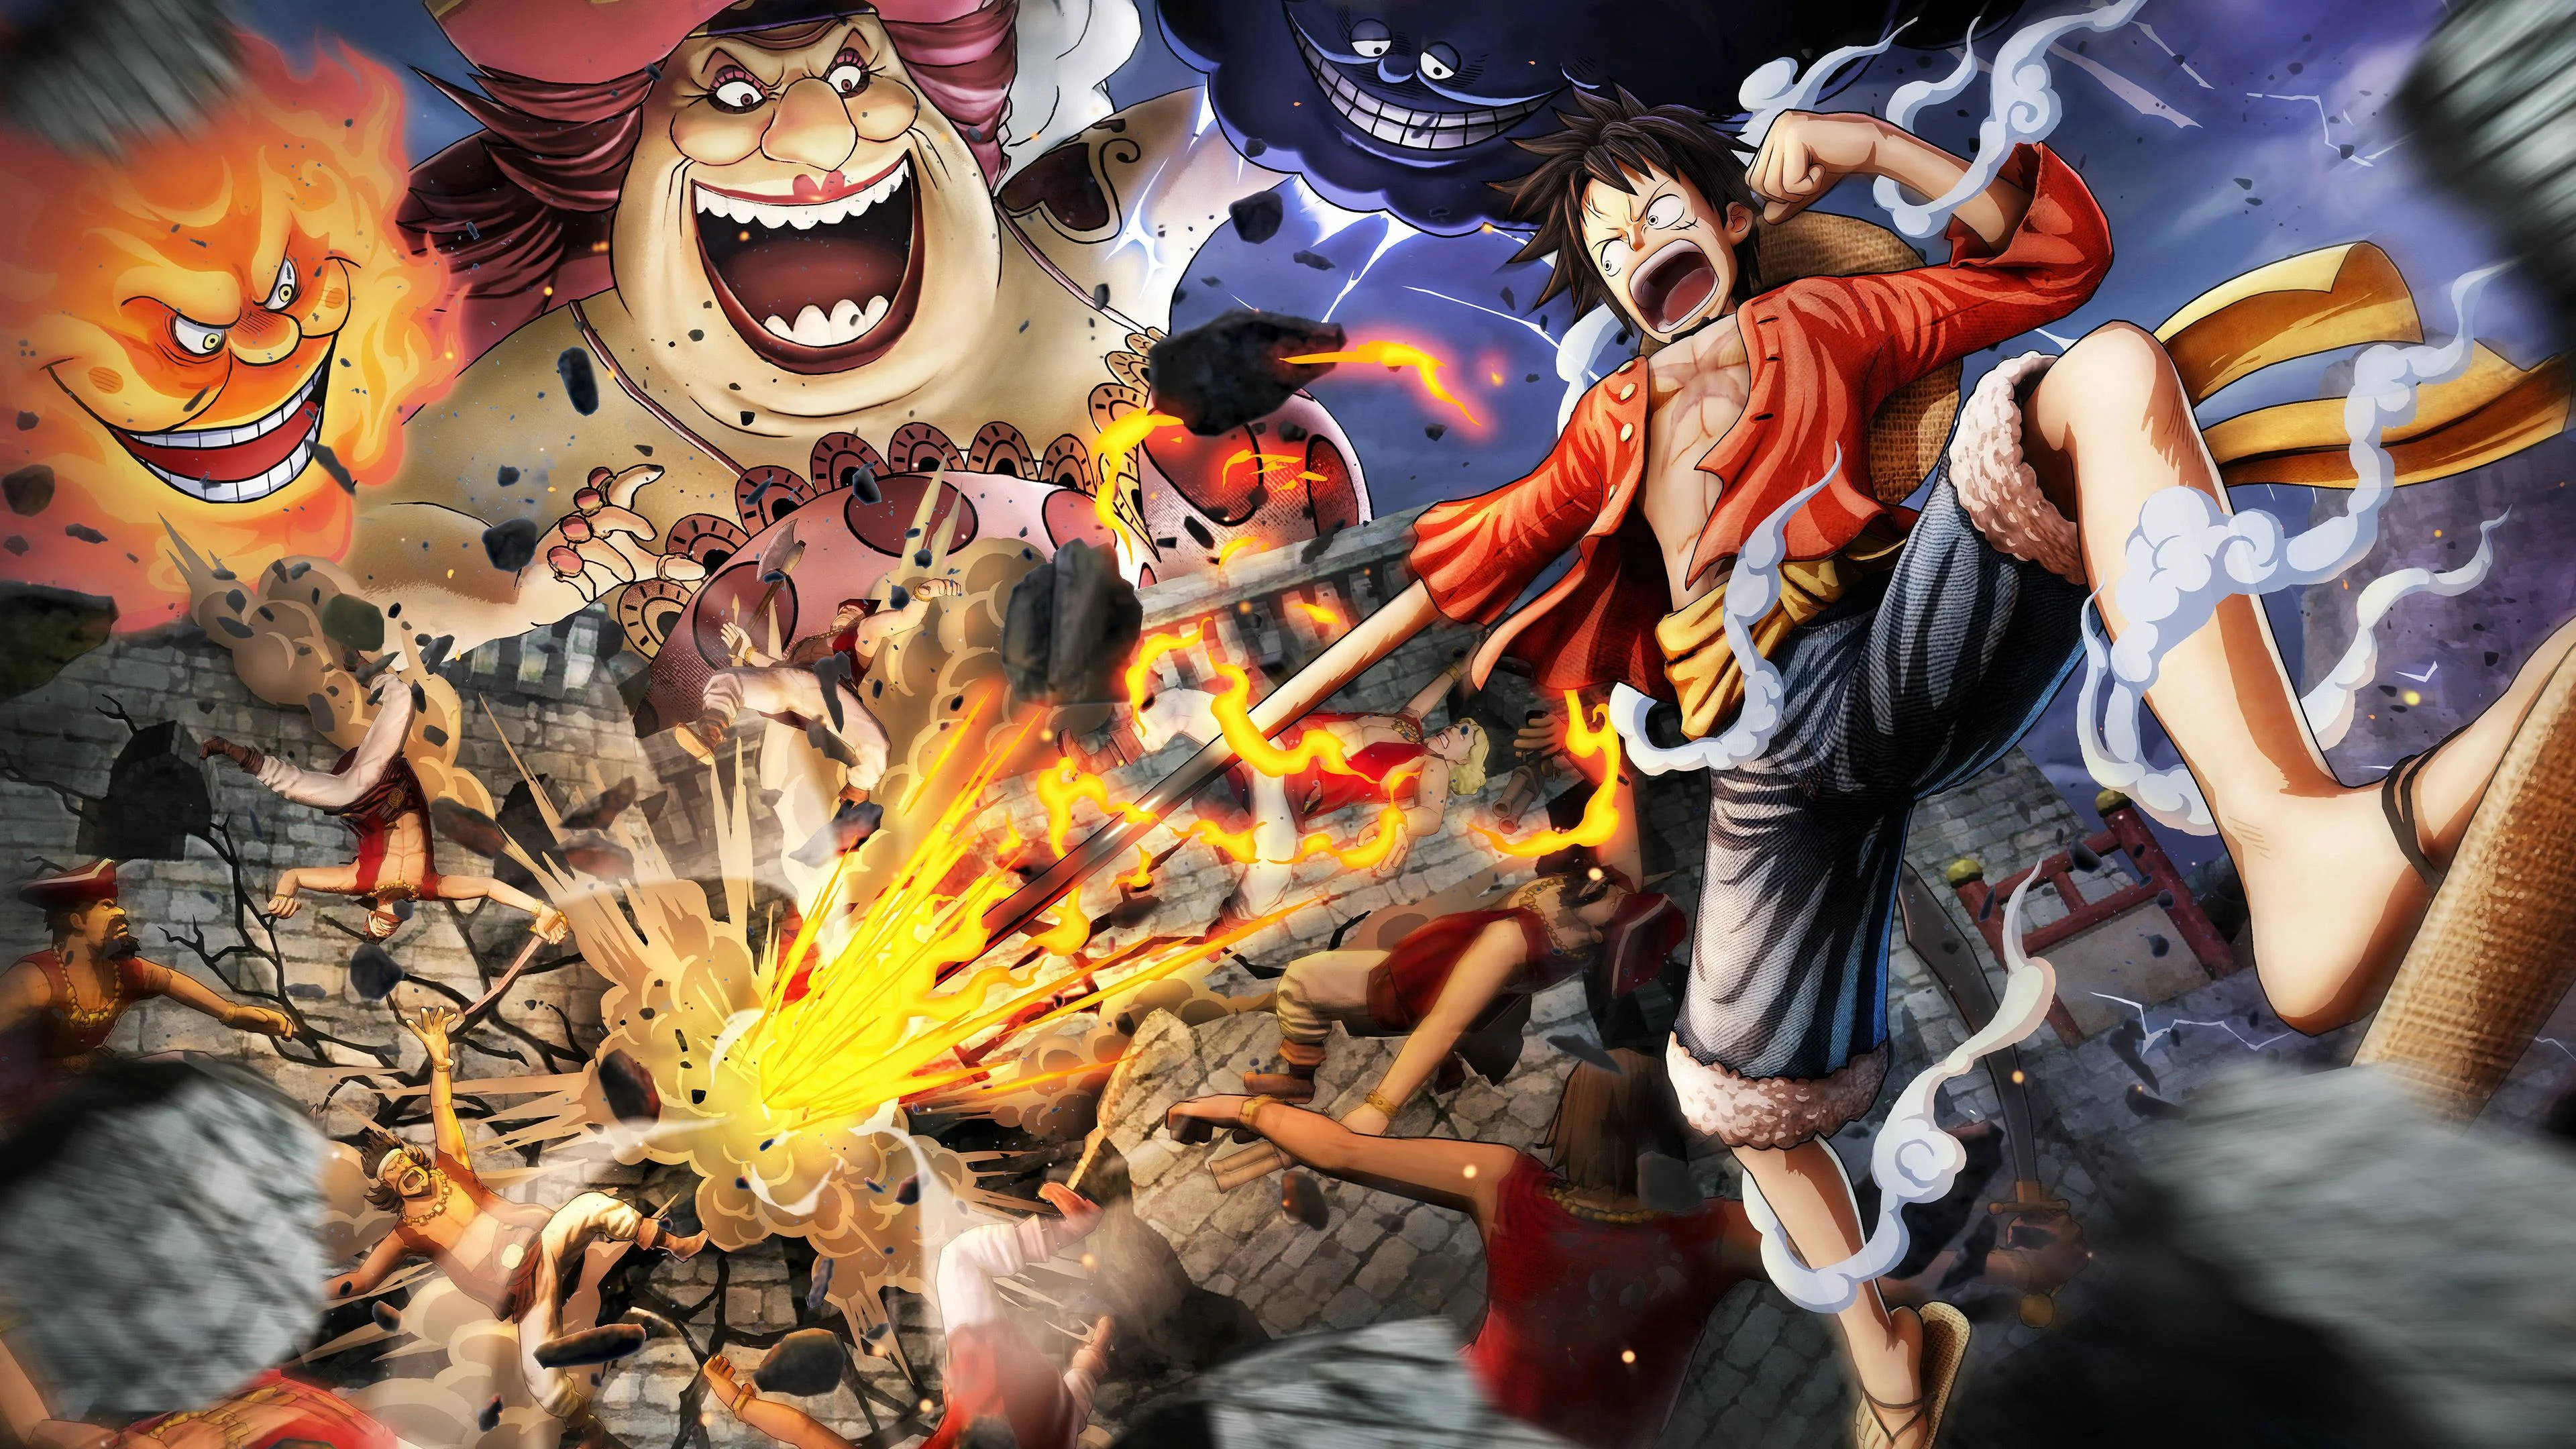 One Piece wallpaper  Fonds d'écran animés hd, Fond d'ecran dessin, Monkey  d luffy